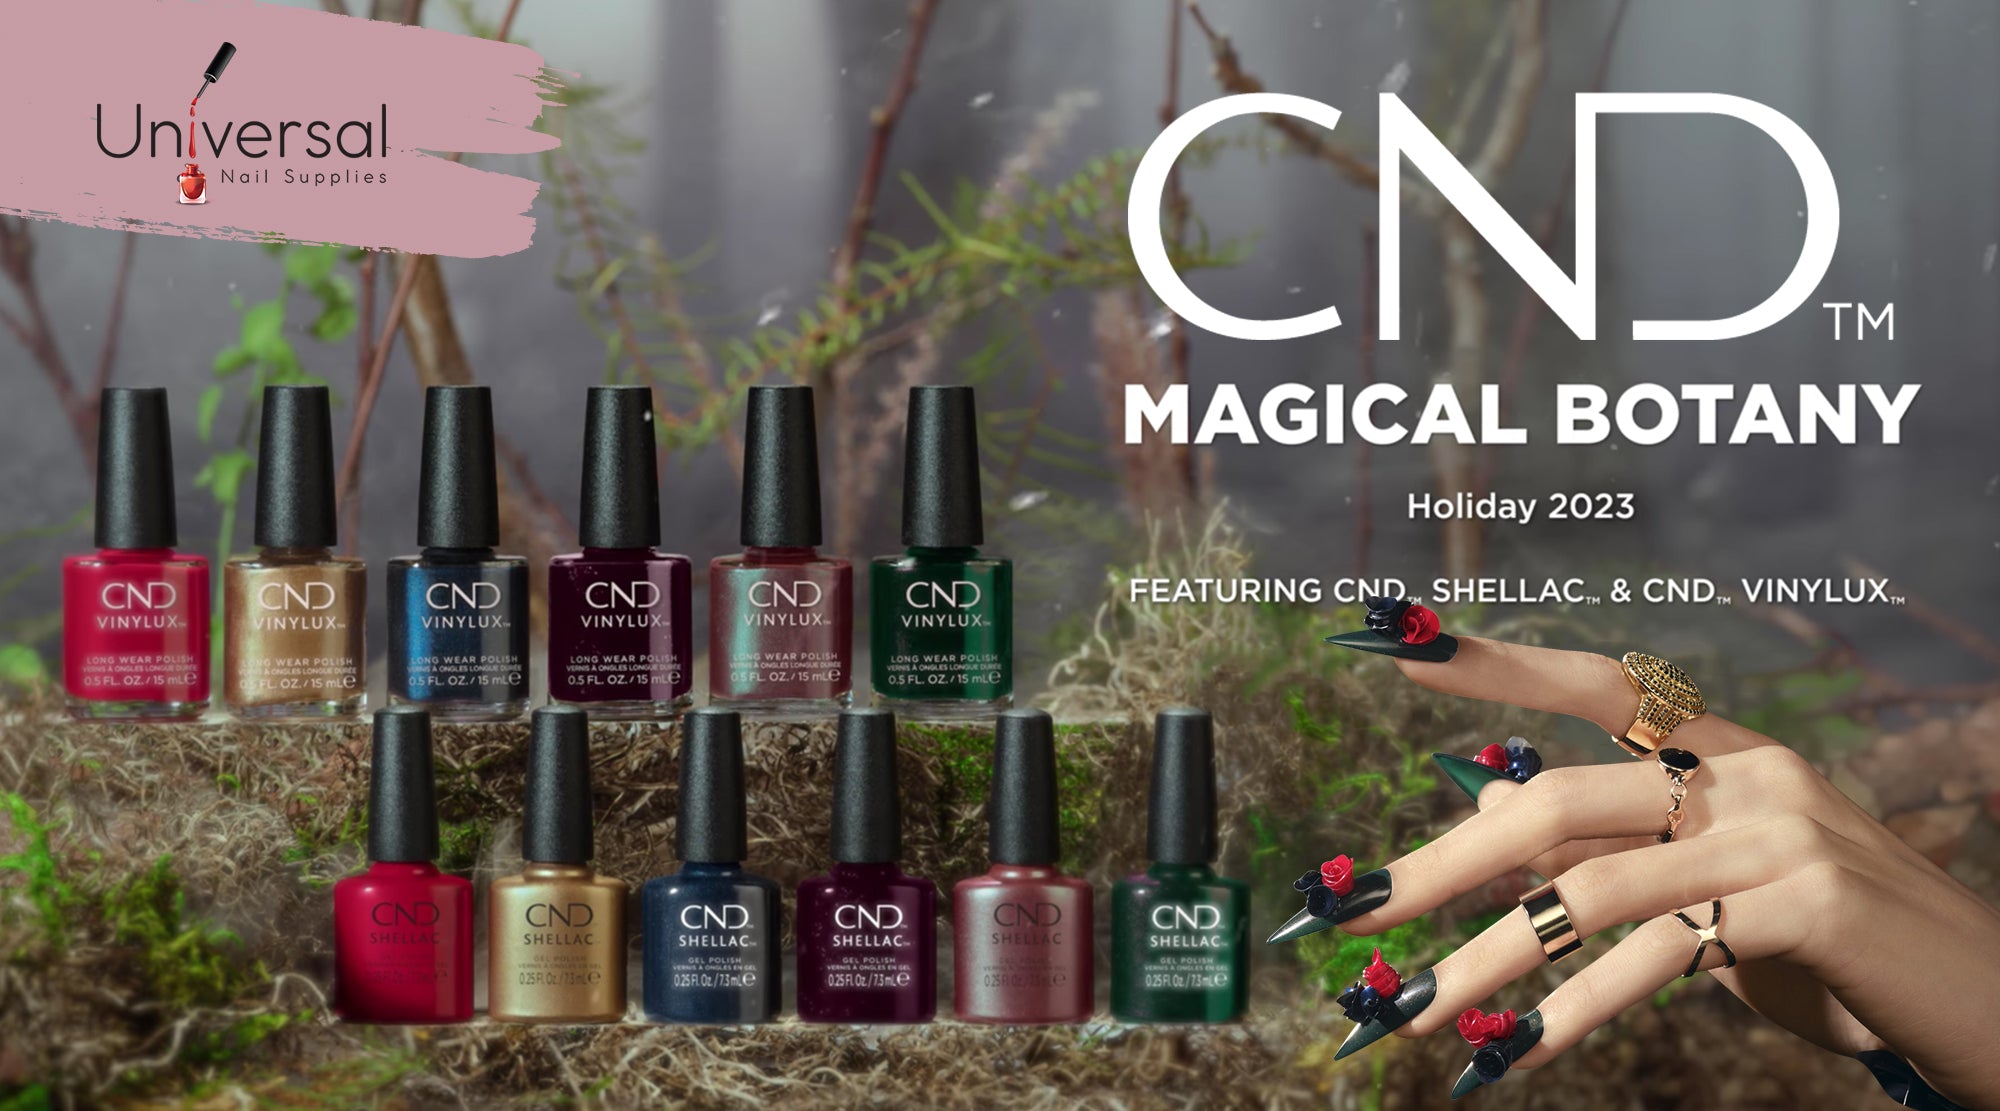 Creative nail art design with cnd magical botany nail polish